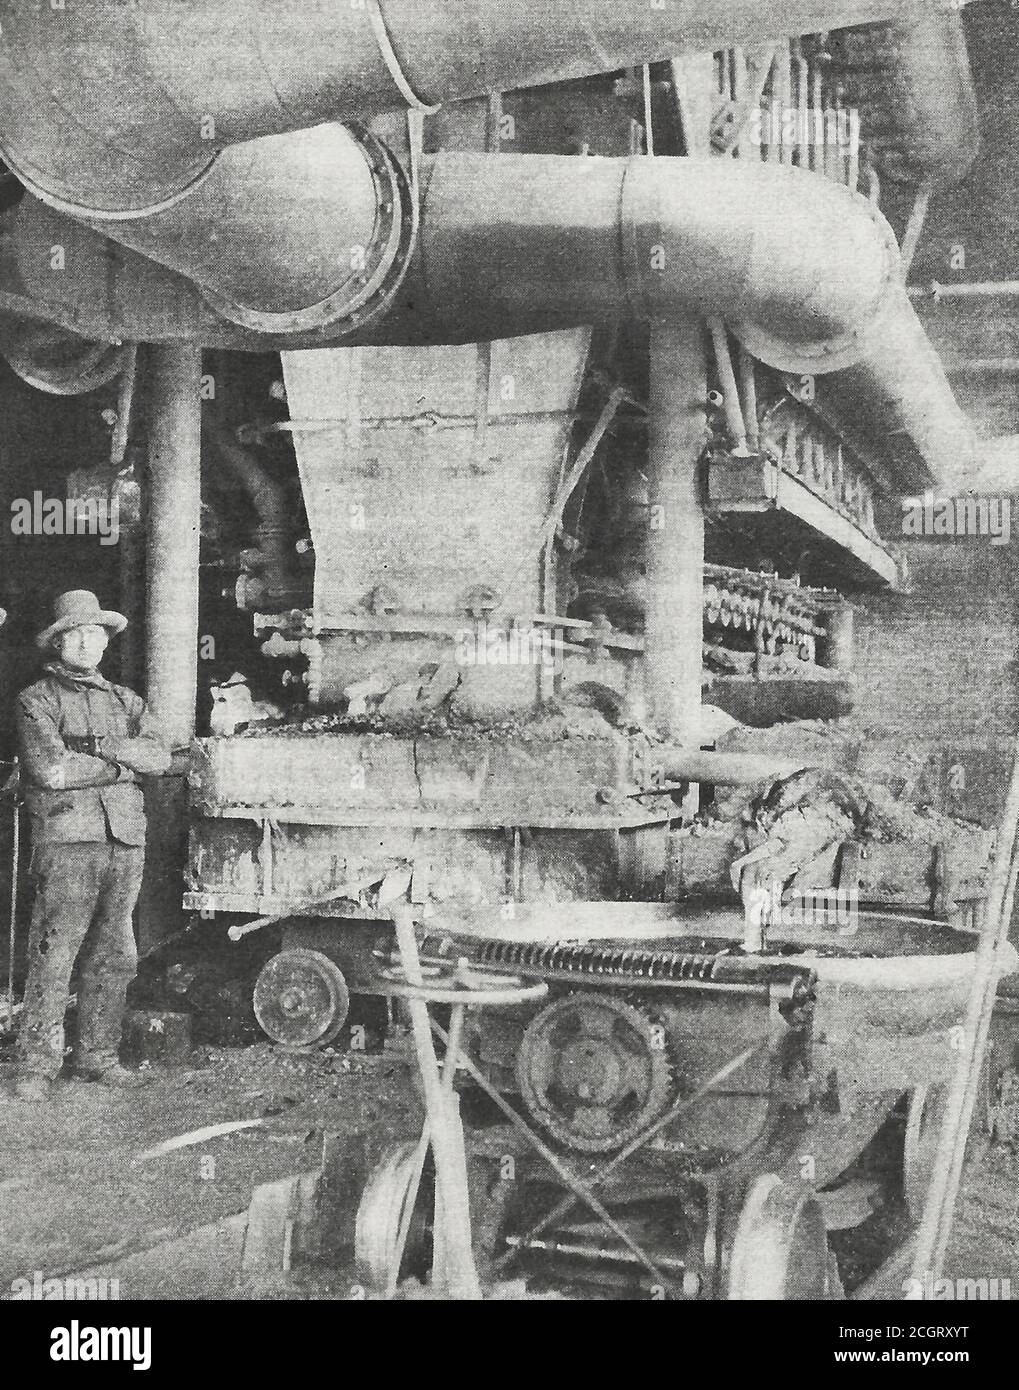 Un des fours d'une fonderie moderne à Golden, Colorado. Par le tuyau de vidange en bas à droite, la matière de cuivre s'écoule dans une cuve de raffinage. Le four a une capacité de 300 tonnes par jour. Vers 1910 Banque D'Images